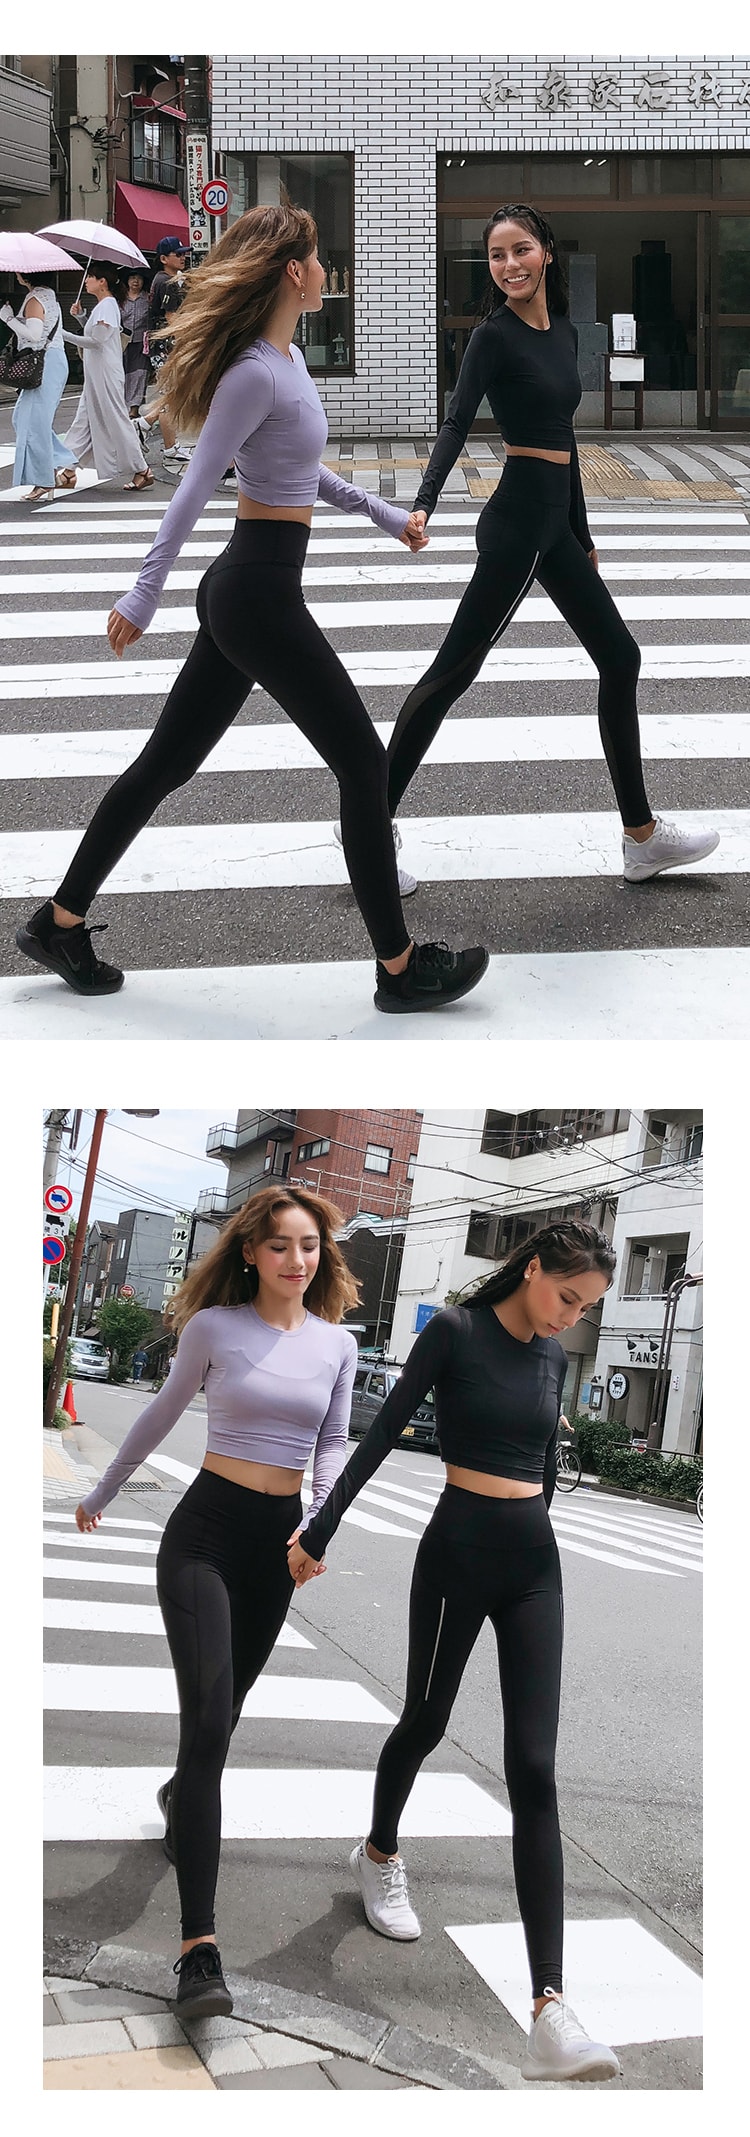 中国直邮 暴走的萝莉 训练速干健身运动上衣 跑步长袖T恤/灰紫色#/XS